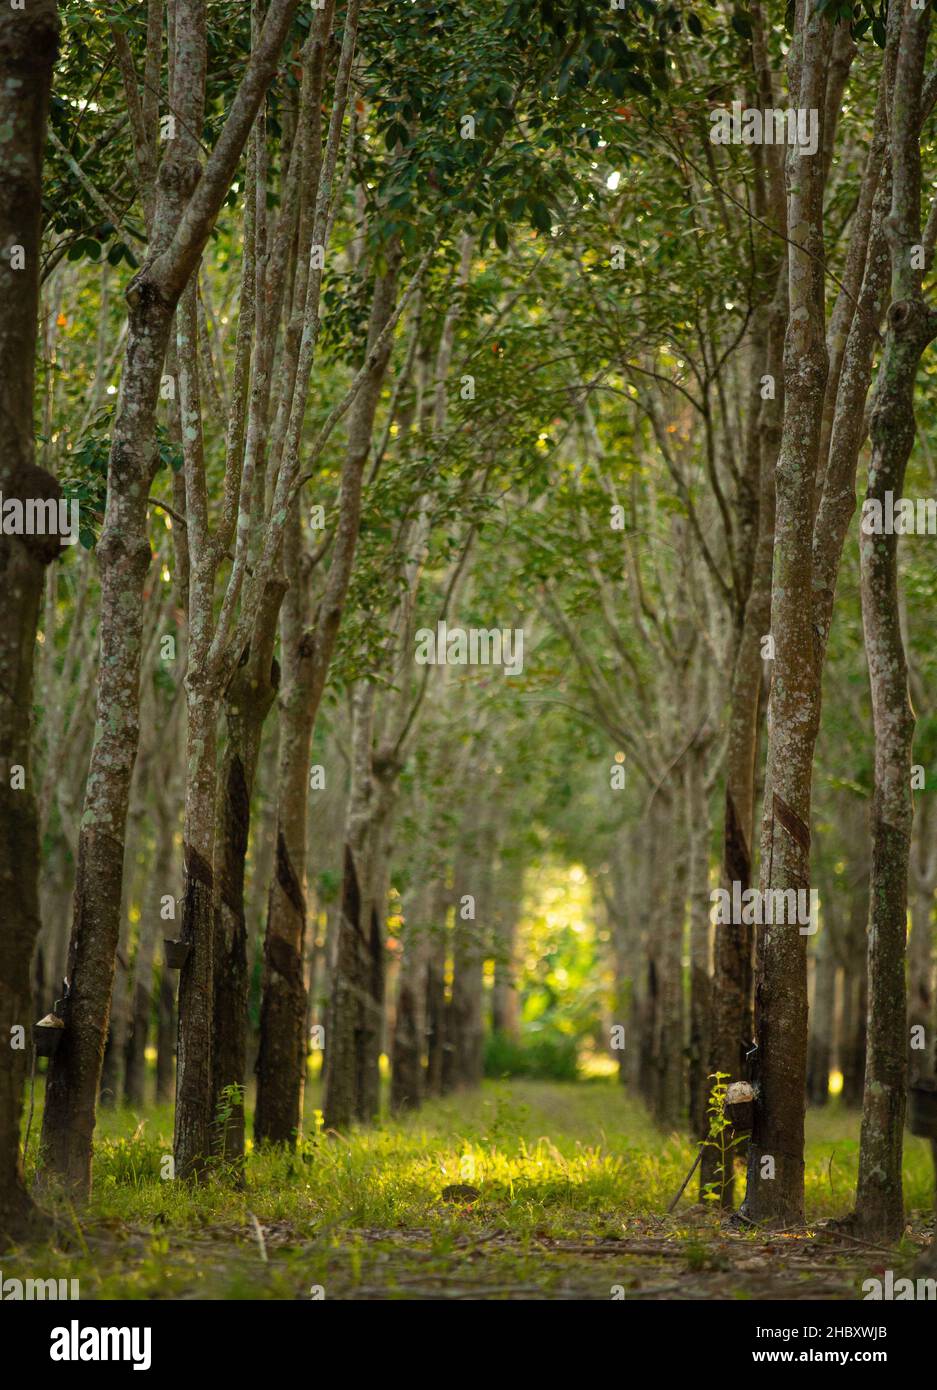 Vue sur le tunnel des arbres en caoutchouc (Hevea brasiliensis).Caoutchouc de taraudage Malaisie. Banque D'Images